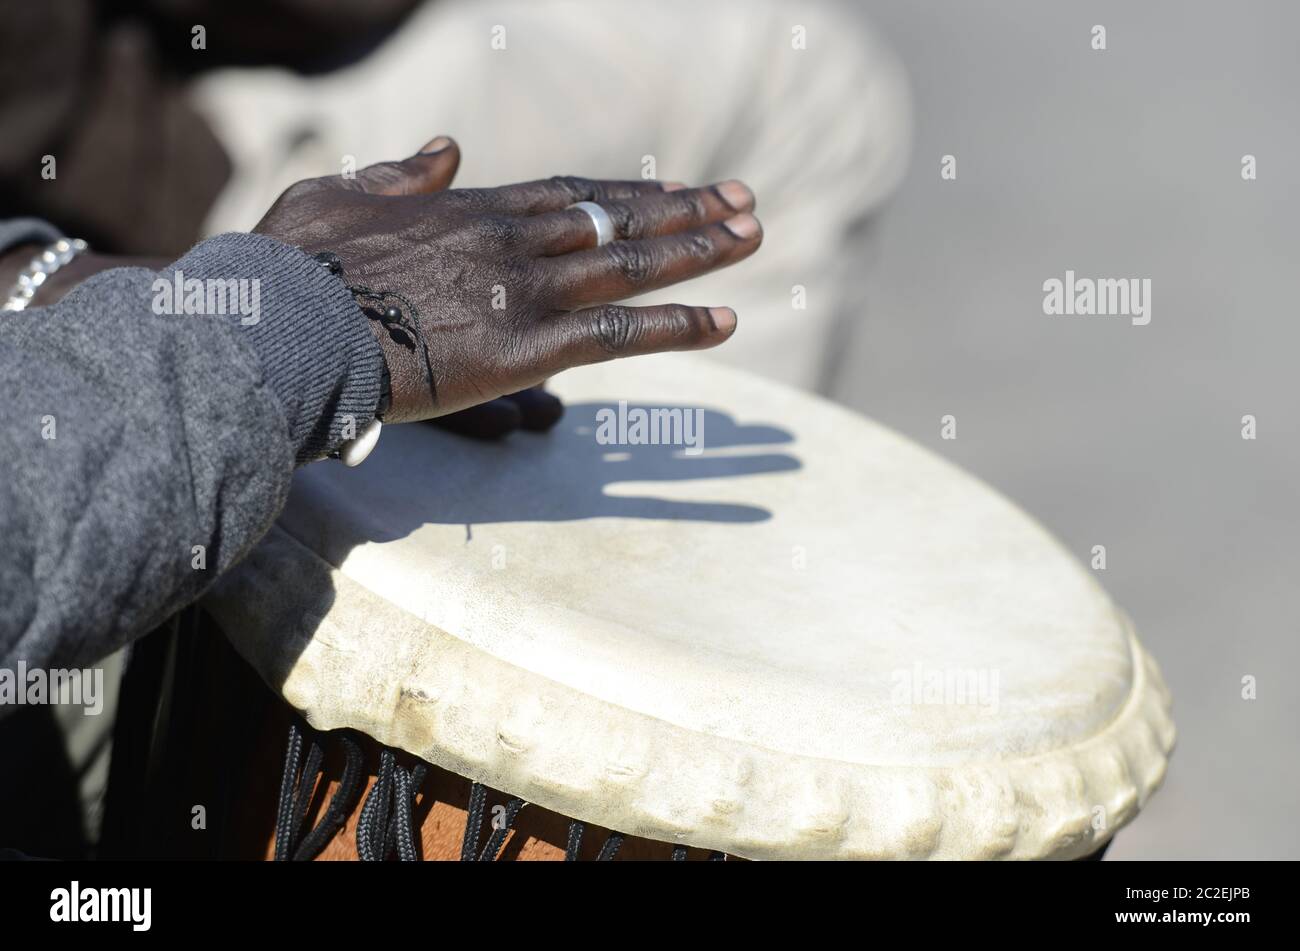 Djembe musician Banque de photographies et d'images à haute résolution -  Alamy